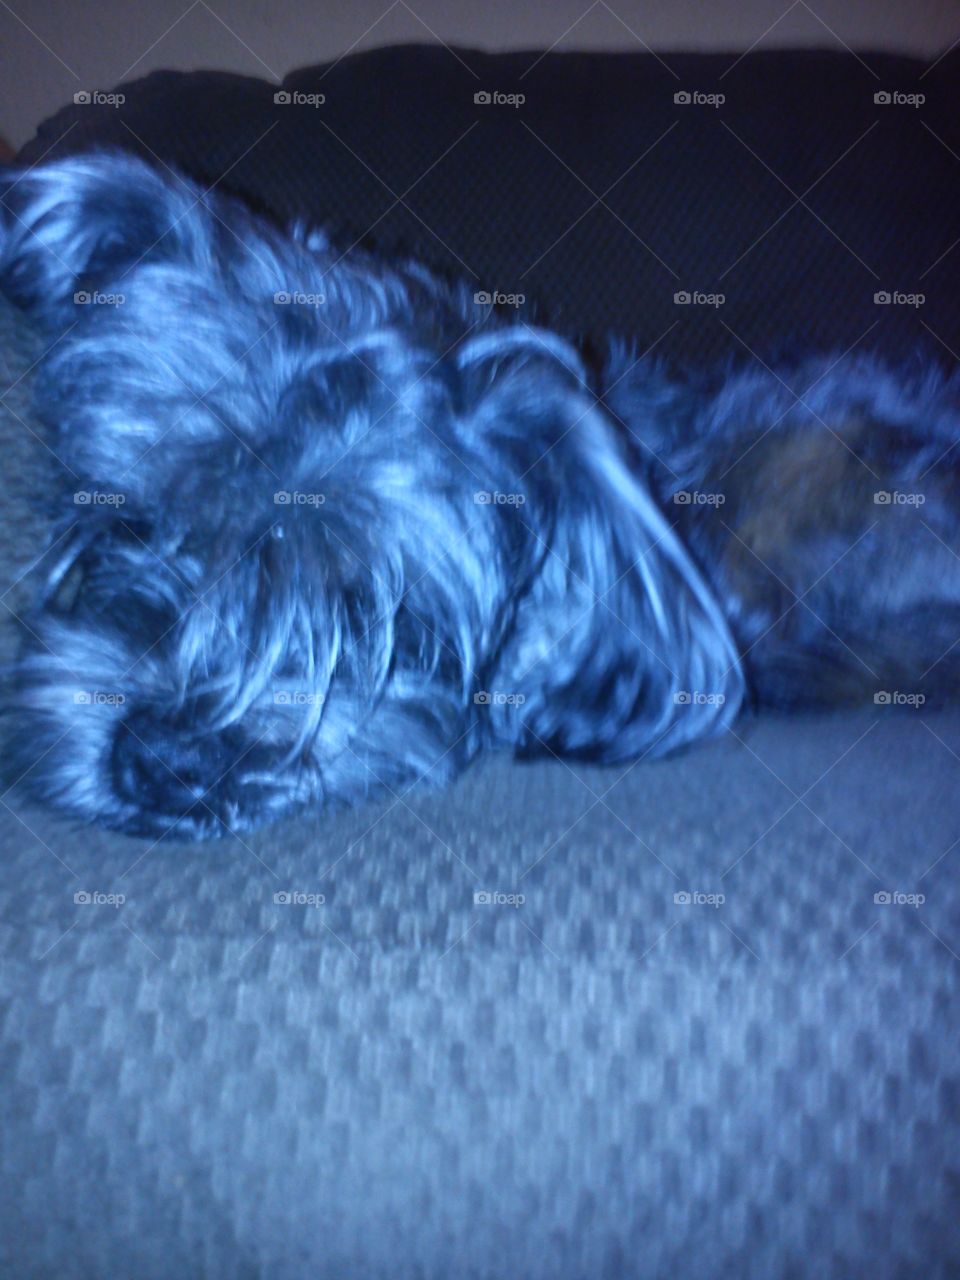 sleepy Tito